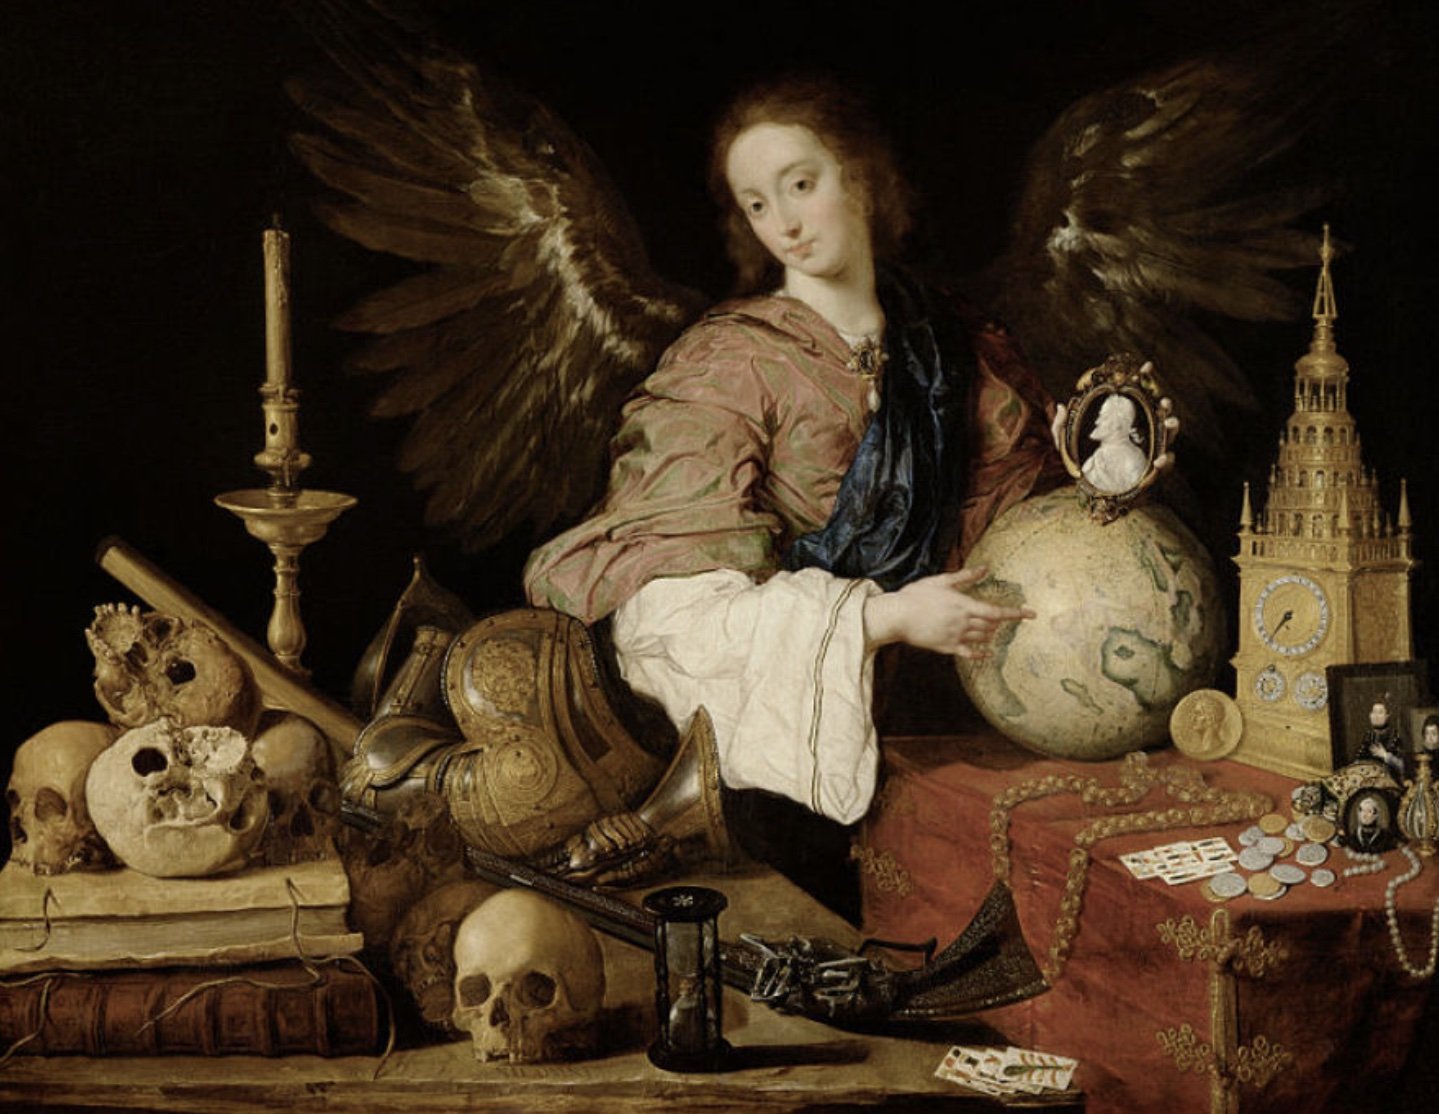 Antonio de Pereda, Allegory of Vanity, c. 1632 - 1636, Kunsthistorisches Museum